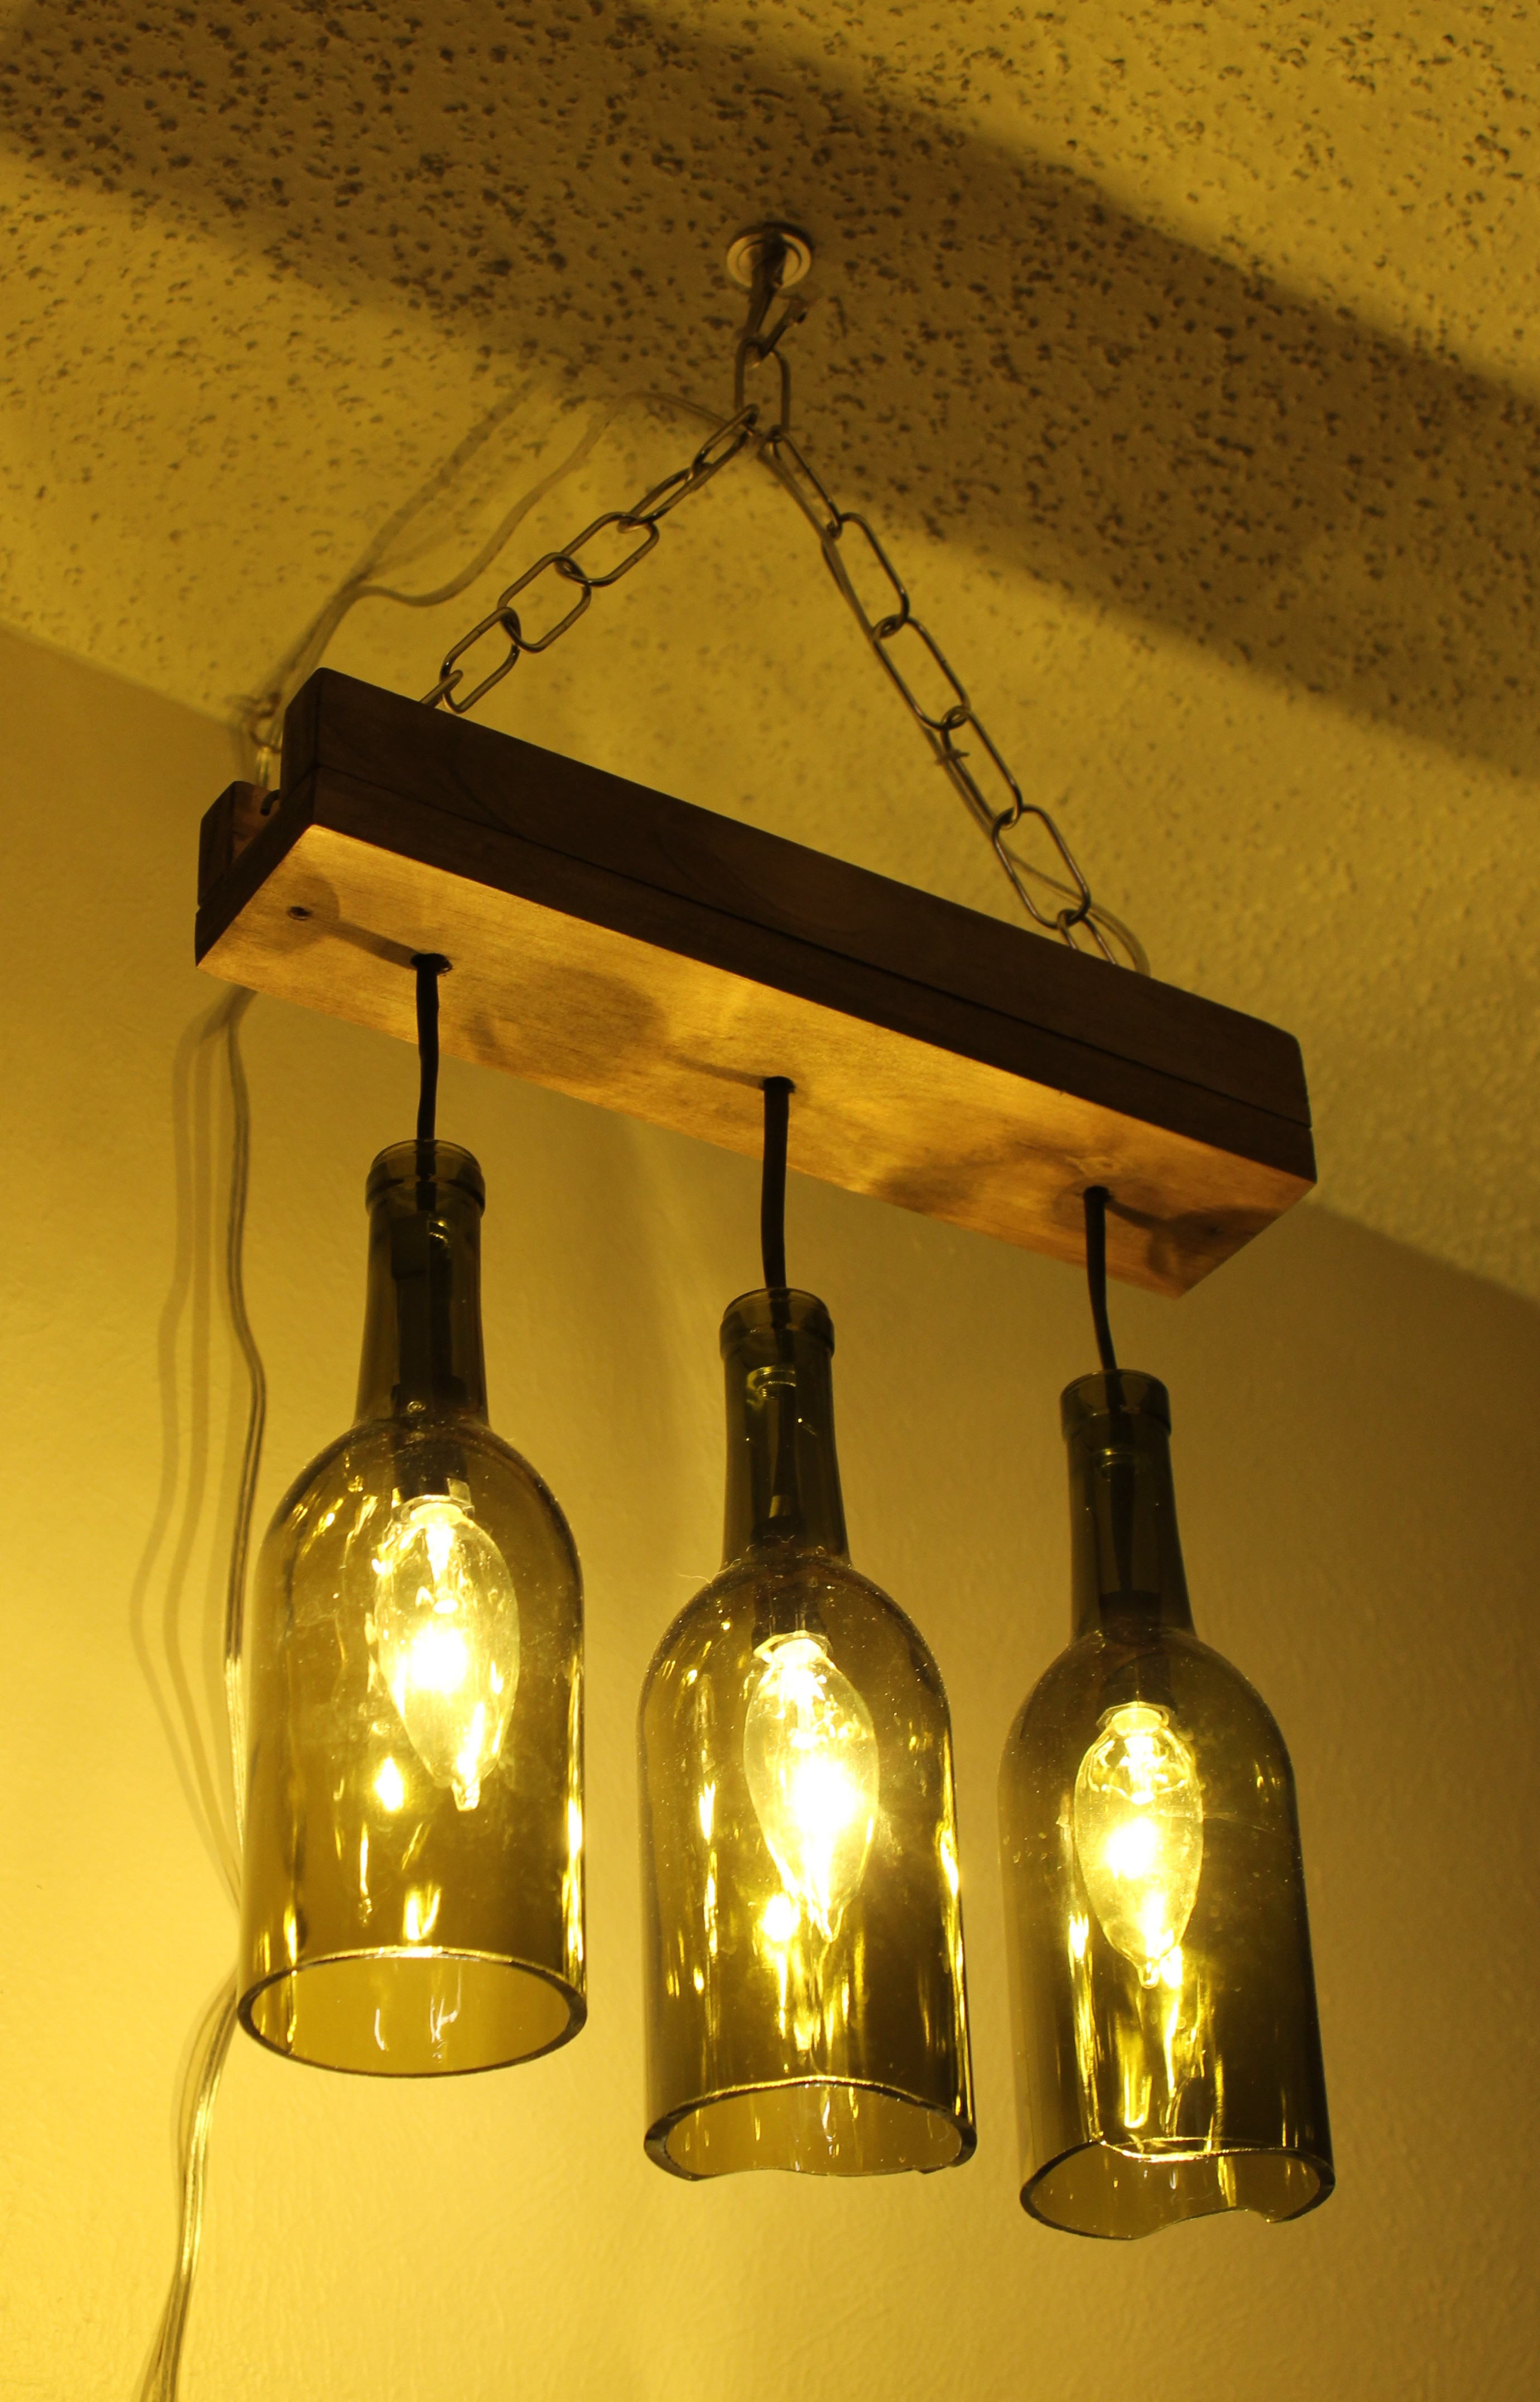 Best ideas about DIY Wine Bottle Chandelier
. Save or Pin Making a wine bottle chandelier Now.